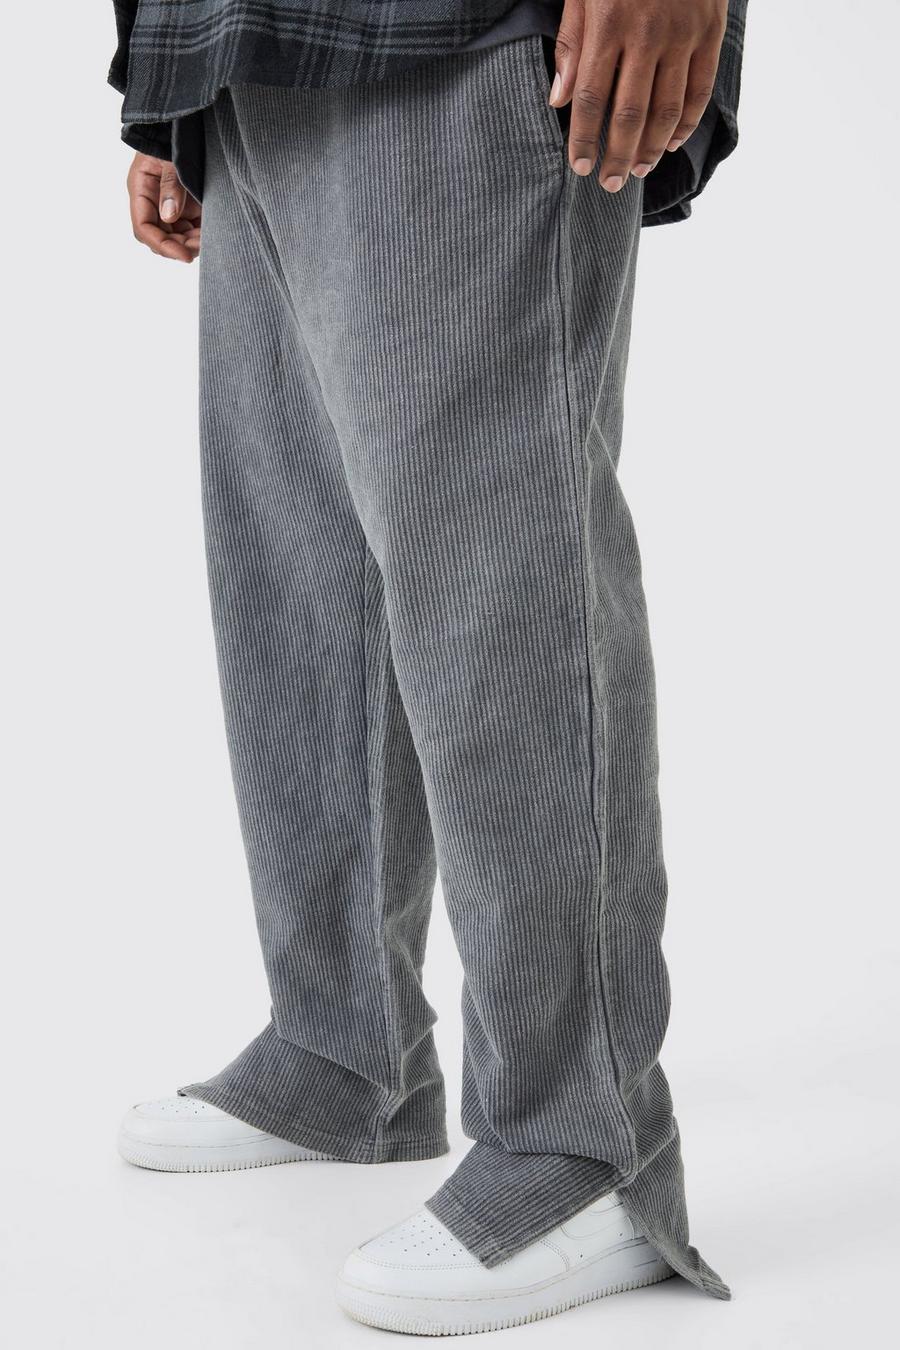 Pantaloni tuta Plus Size Regular Fit in velluto a coste slavato con spacco sul fondo, Charcoal